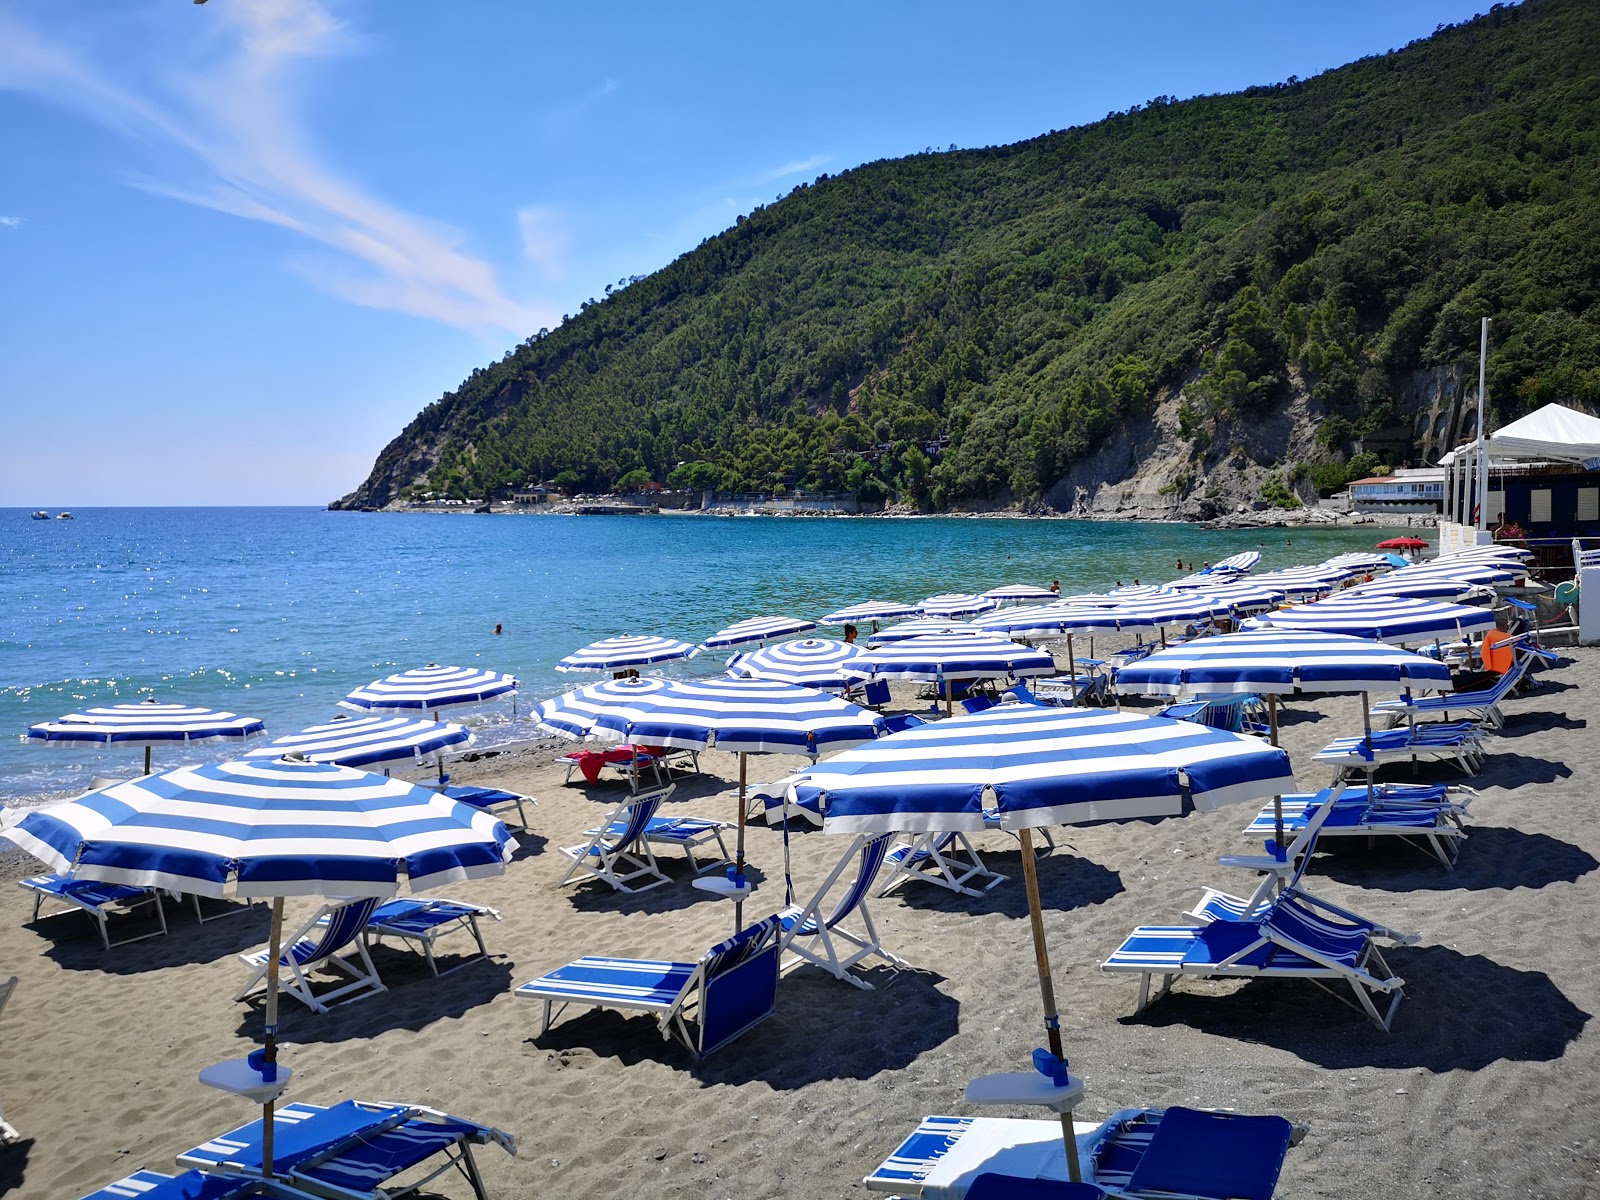 Foto af Spiaggia La Secca med lige kyst